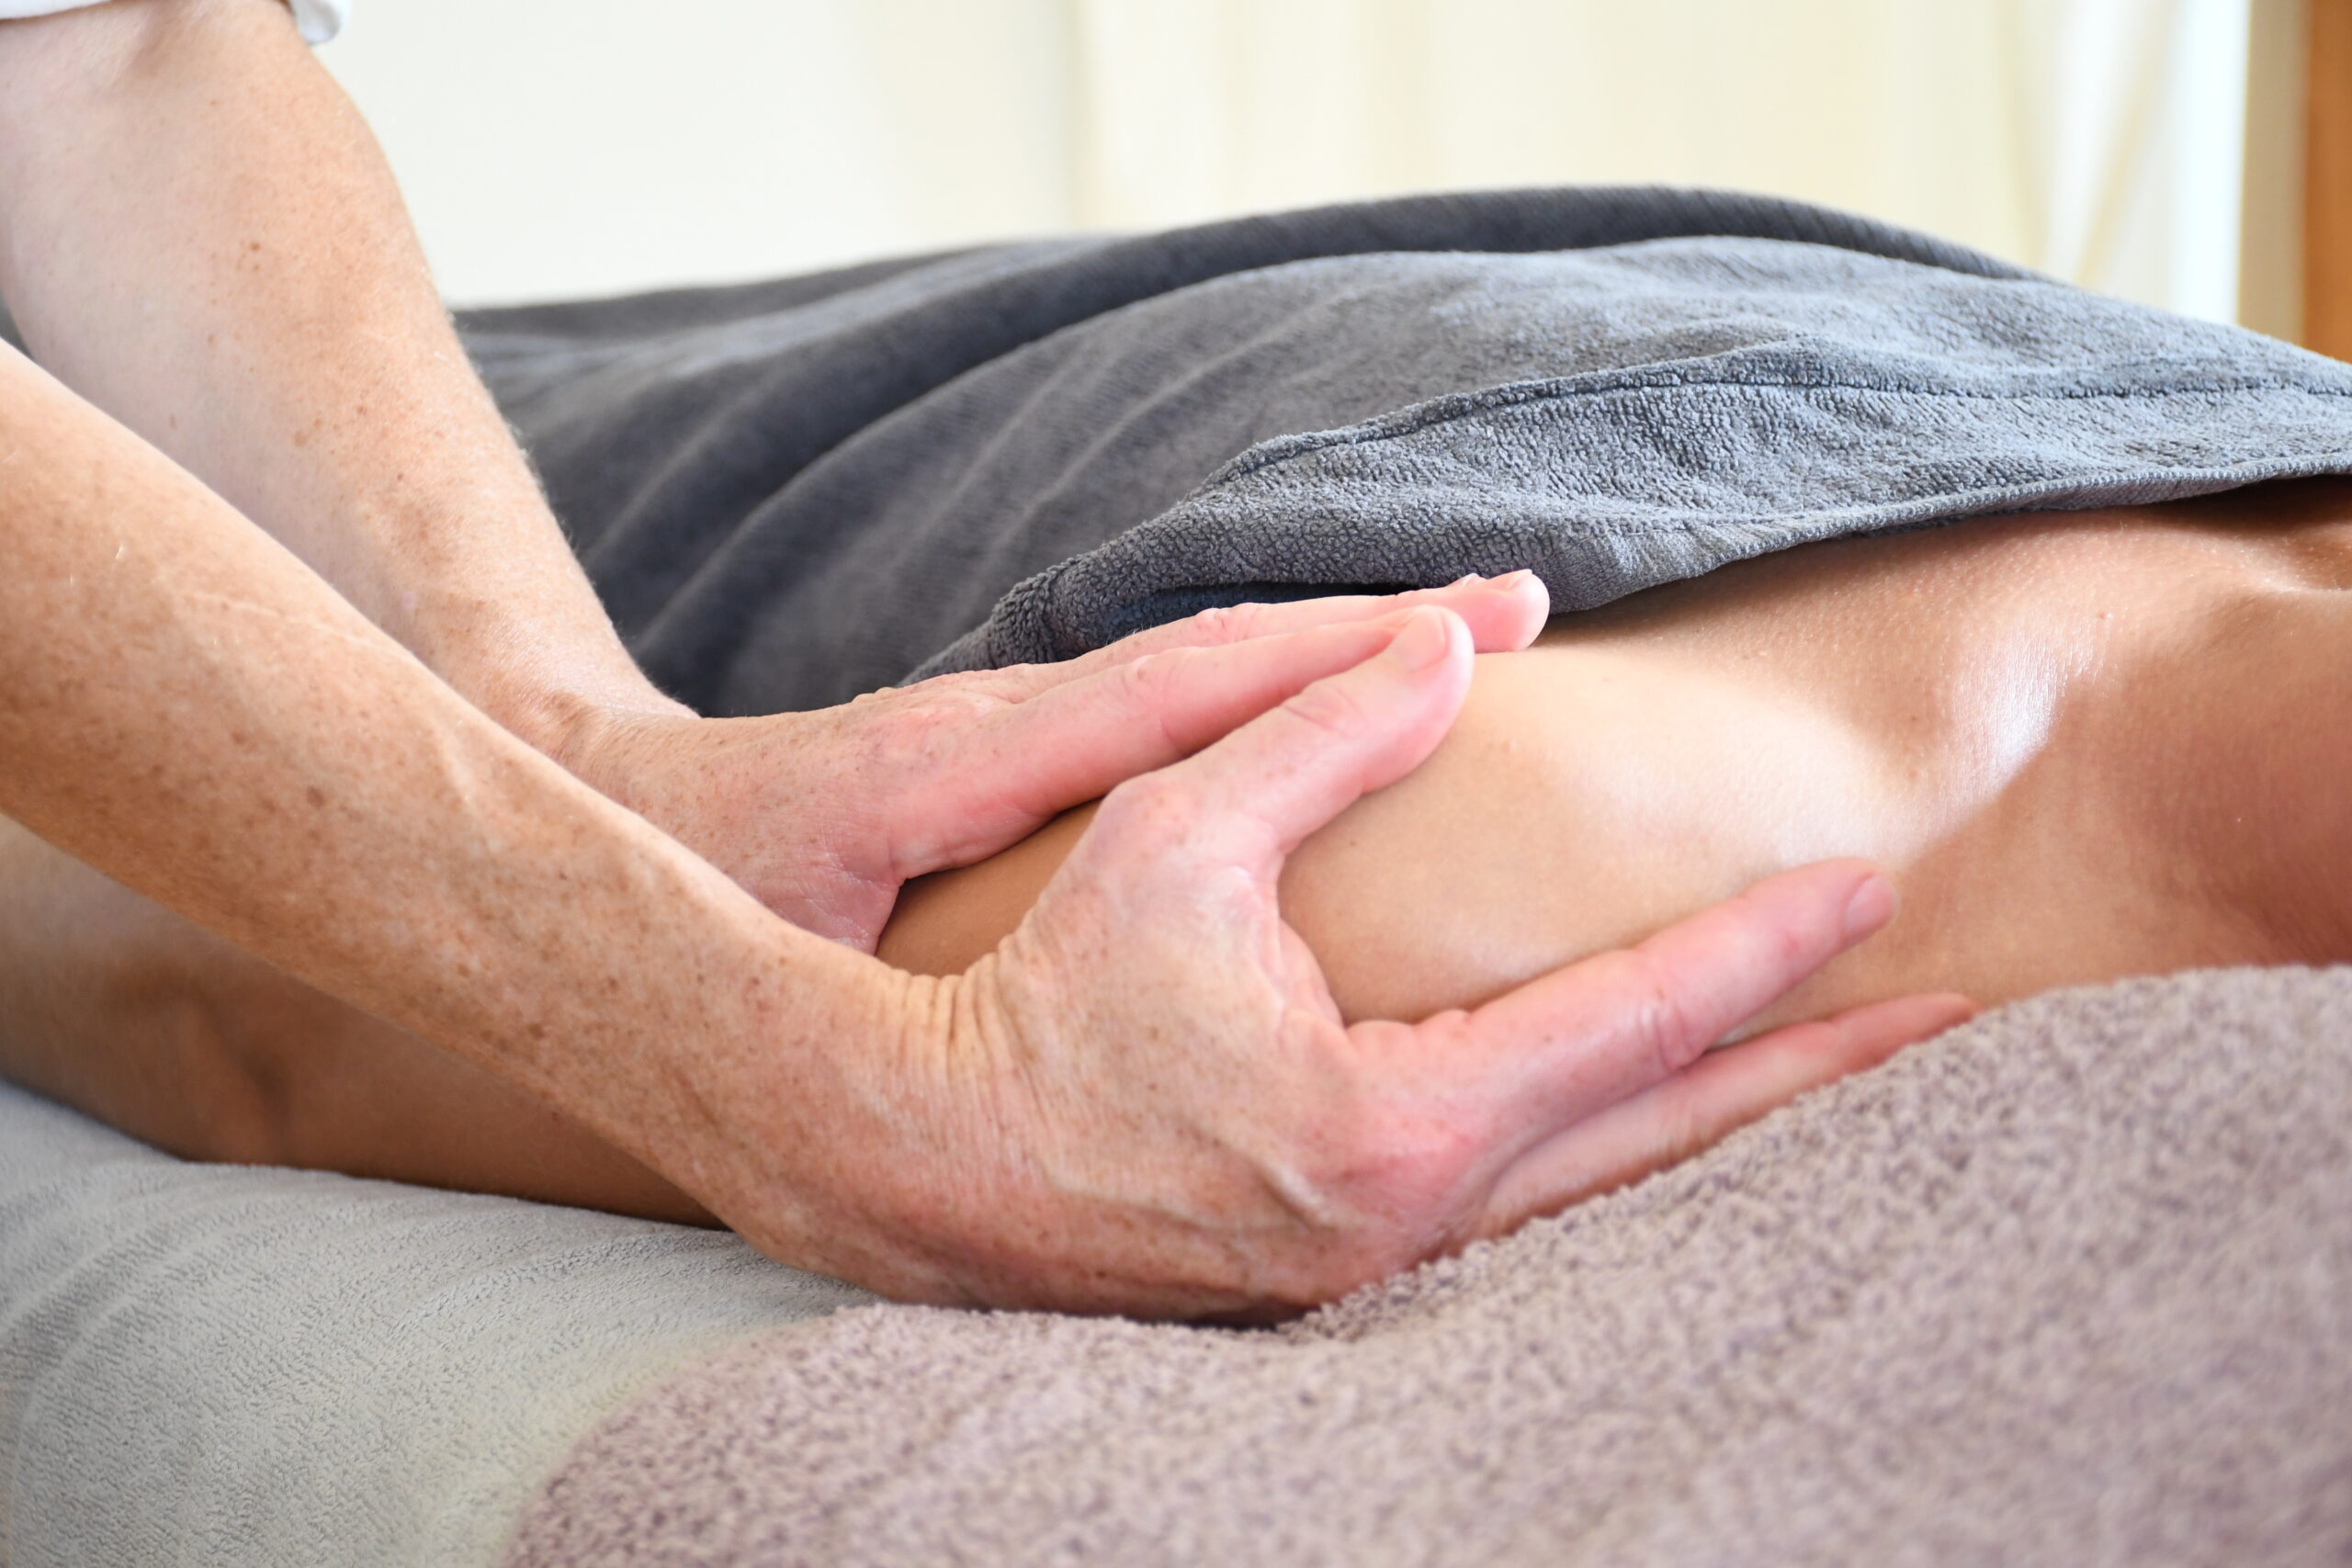 Massage relaxant - massage musculaire - détente - massage namur - massothérapie viva la vida